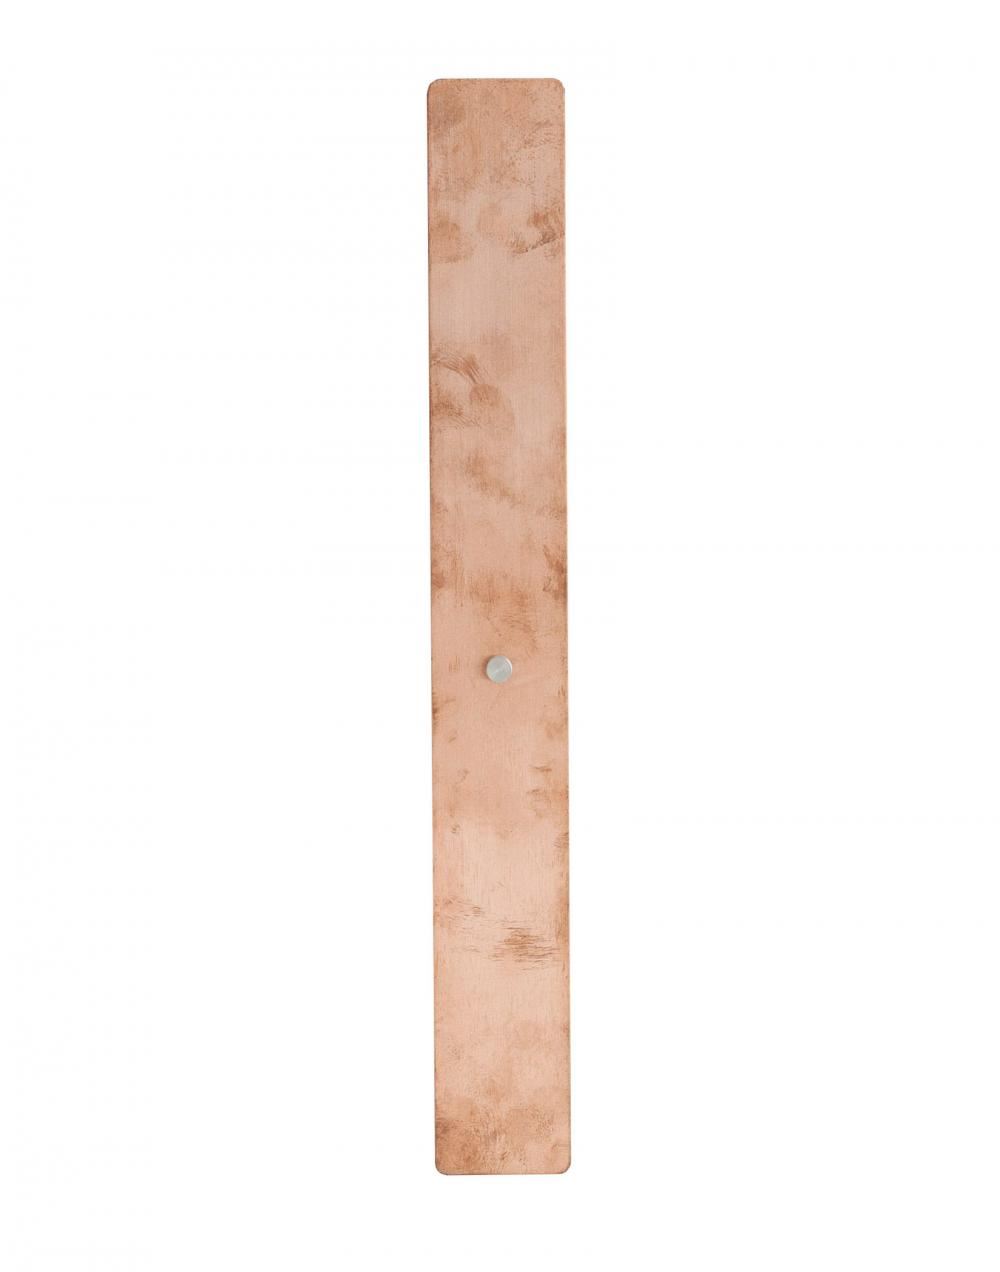 Divar Model Wall Light Copper 3m Brushed